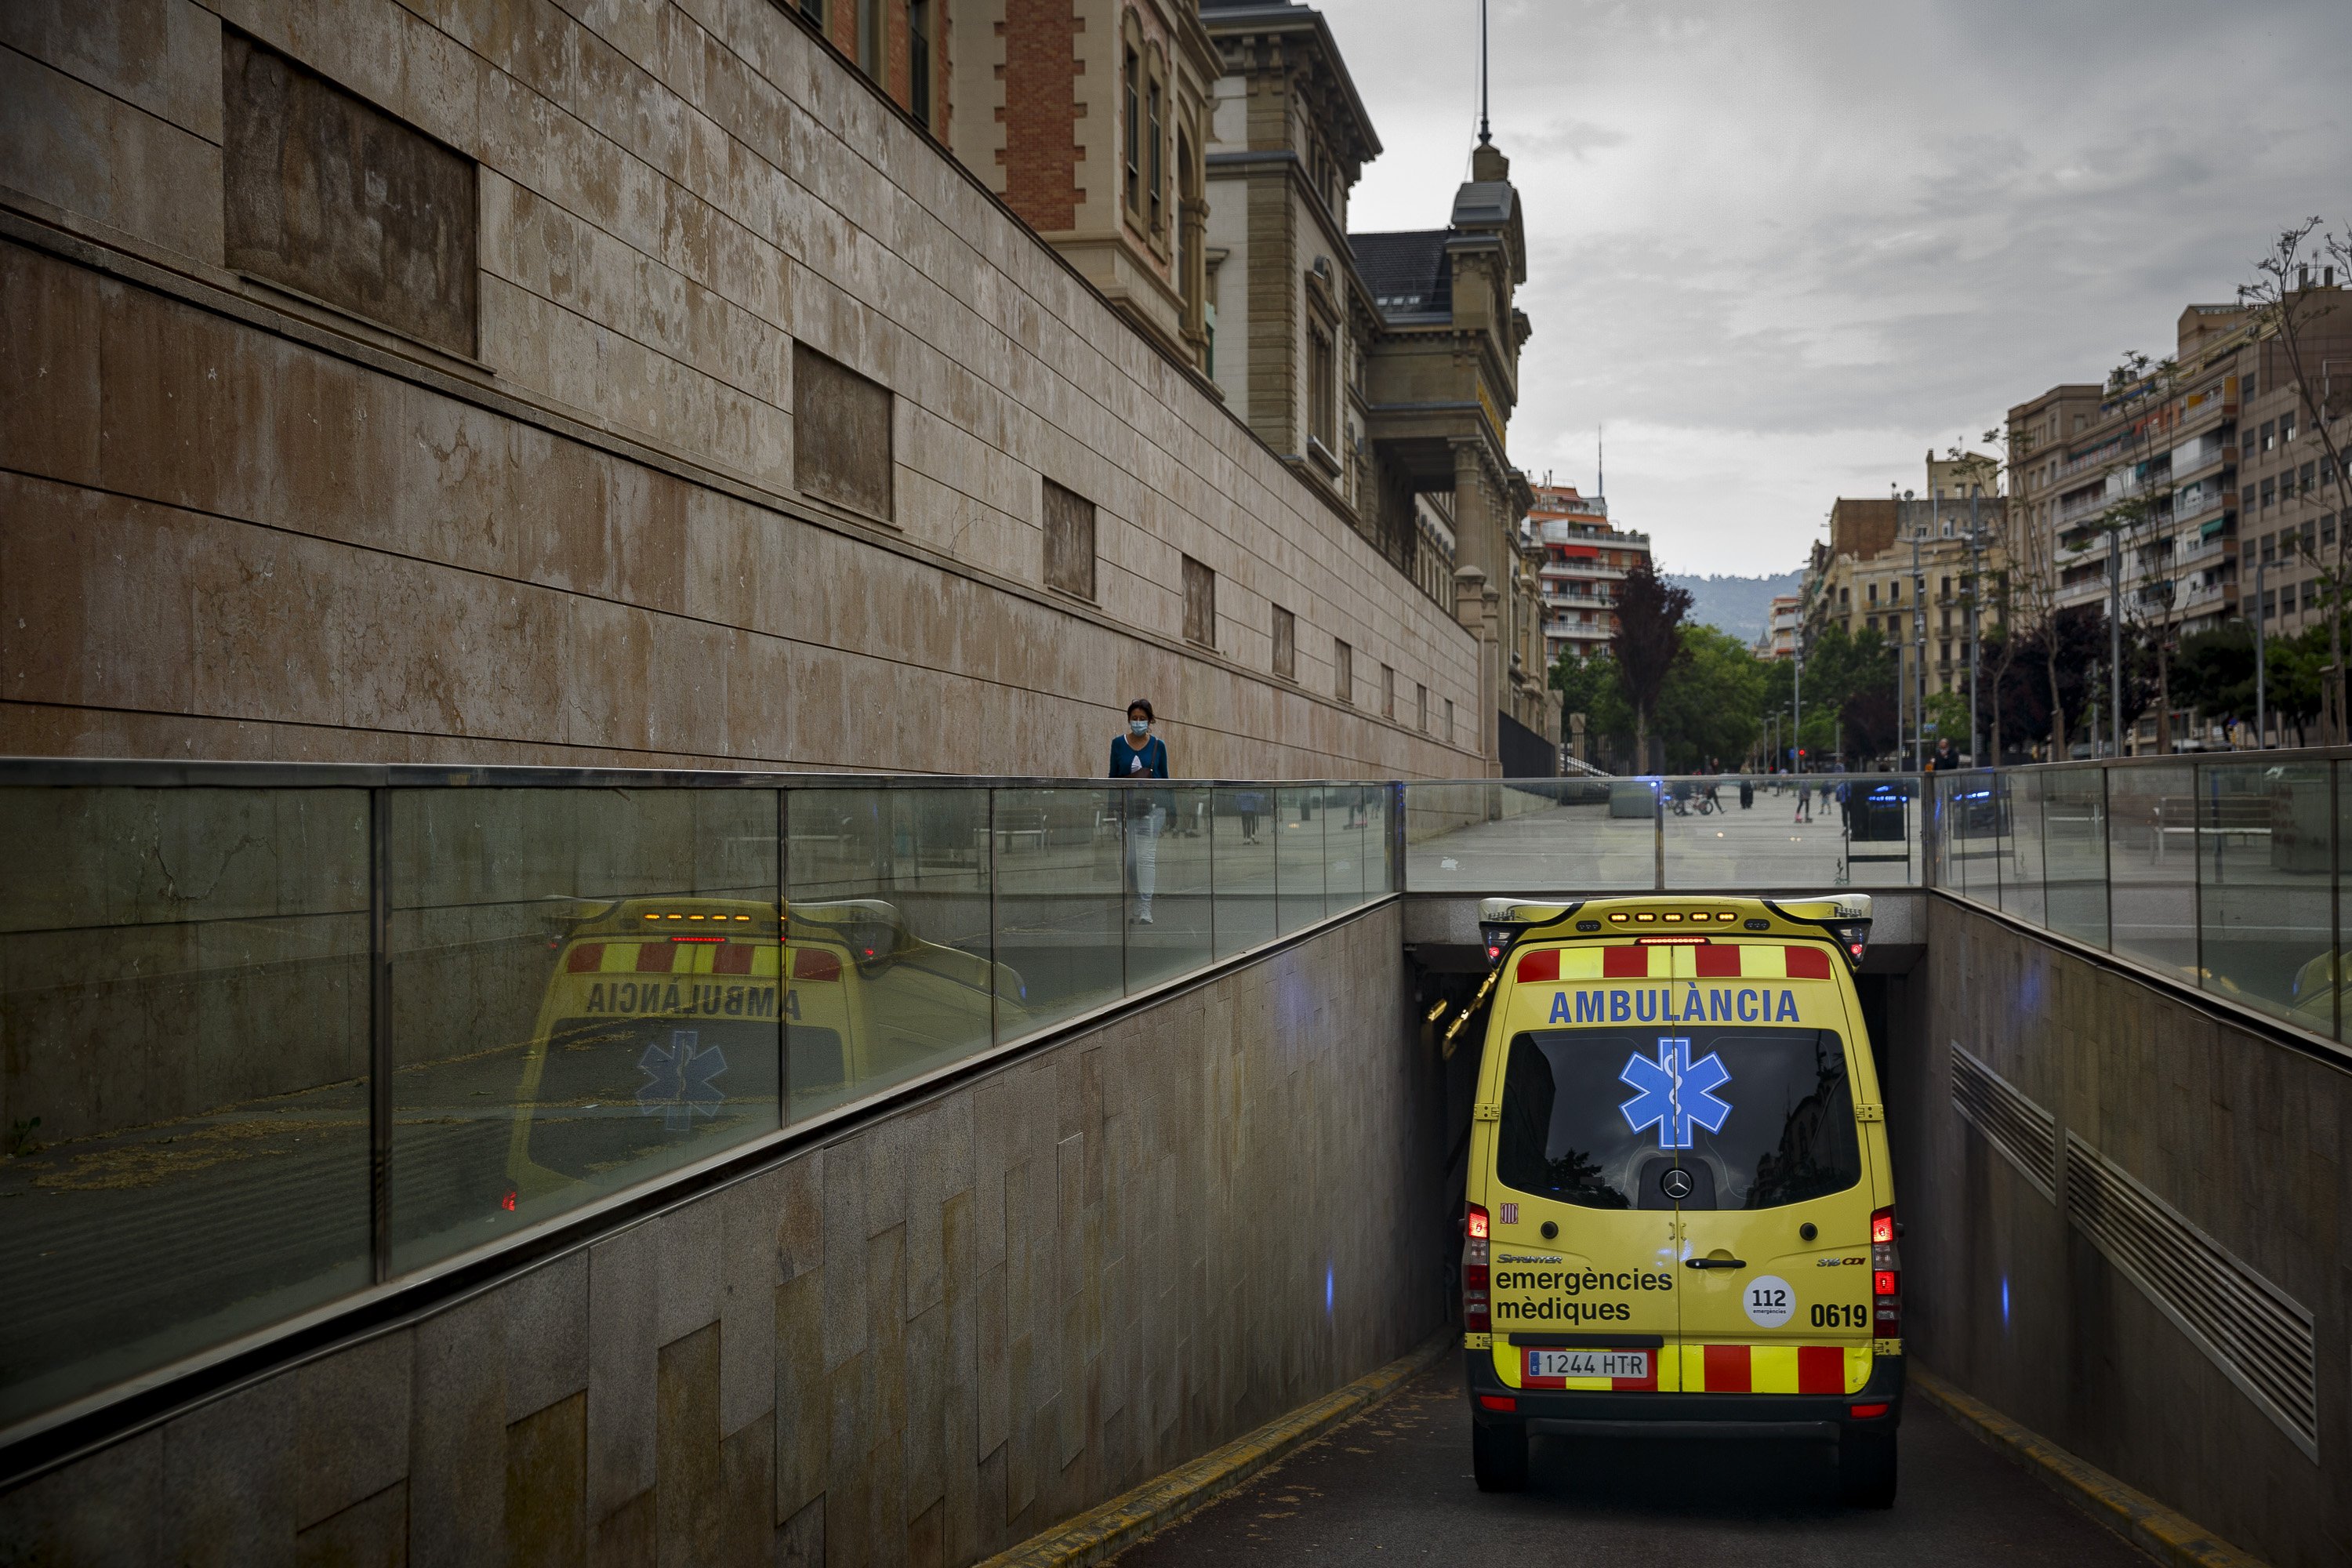 Salut confirma 11 morts per coronavirus a Catalunya i 117 nous contagis